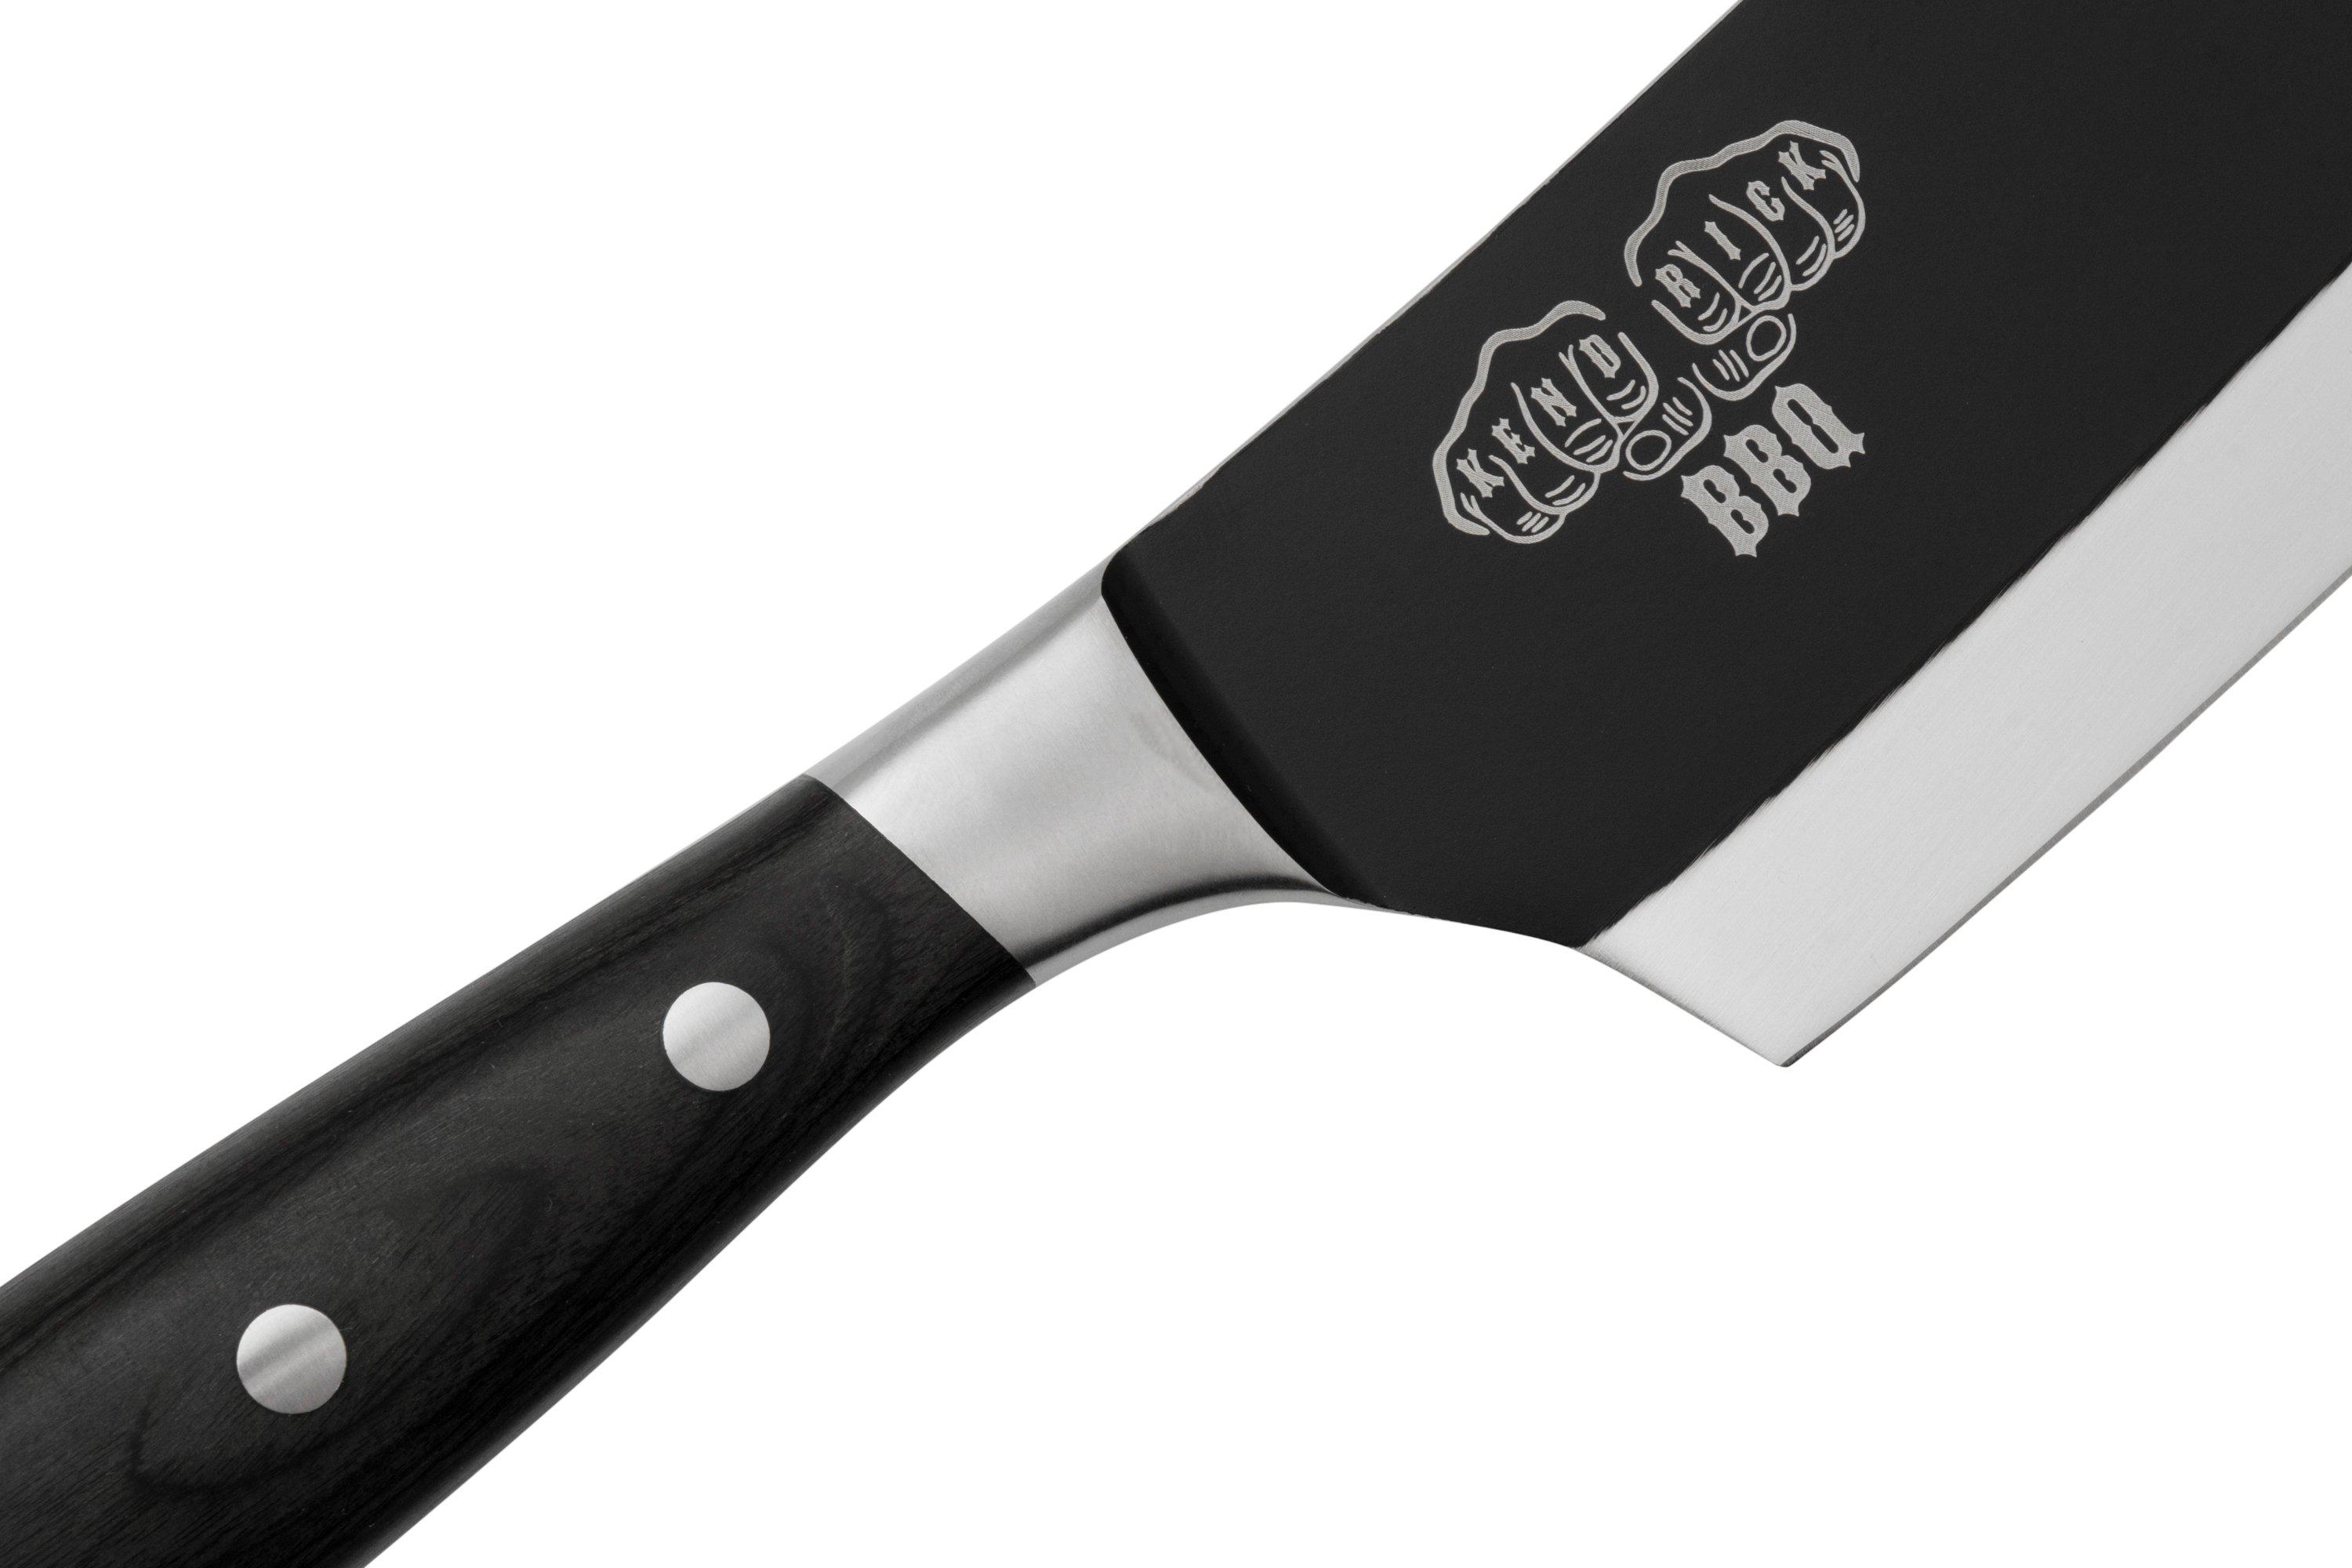 Messermeister Avanta L9684-5-4S, 4-piece steak knife set, silver